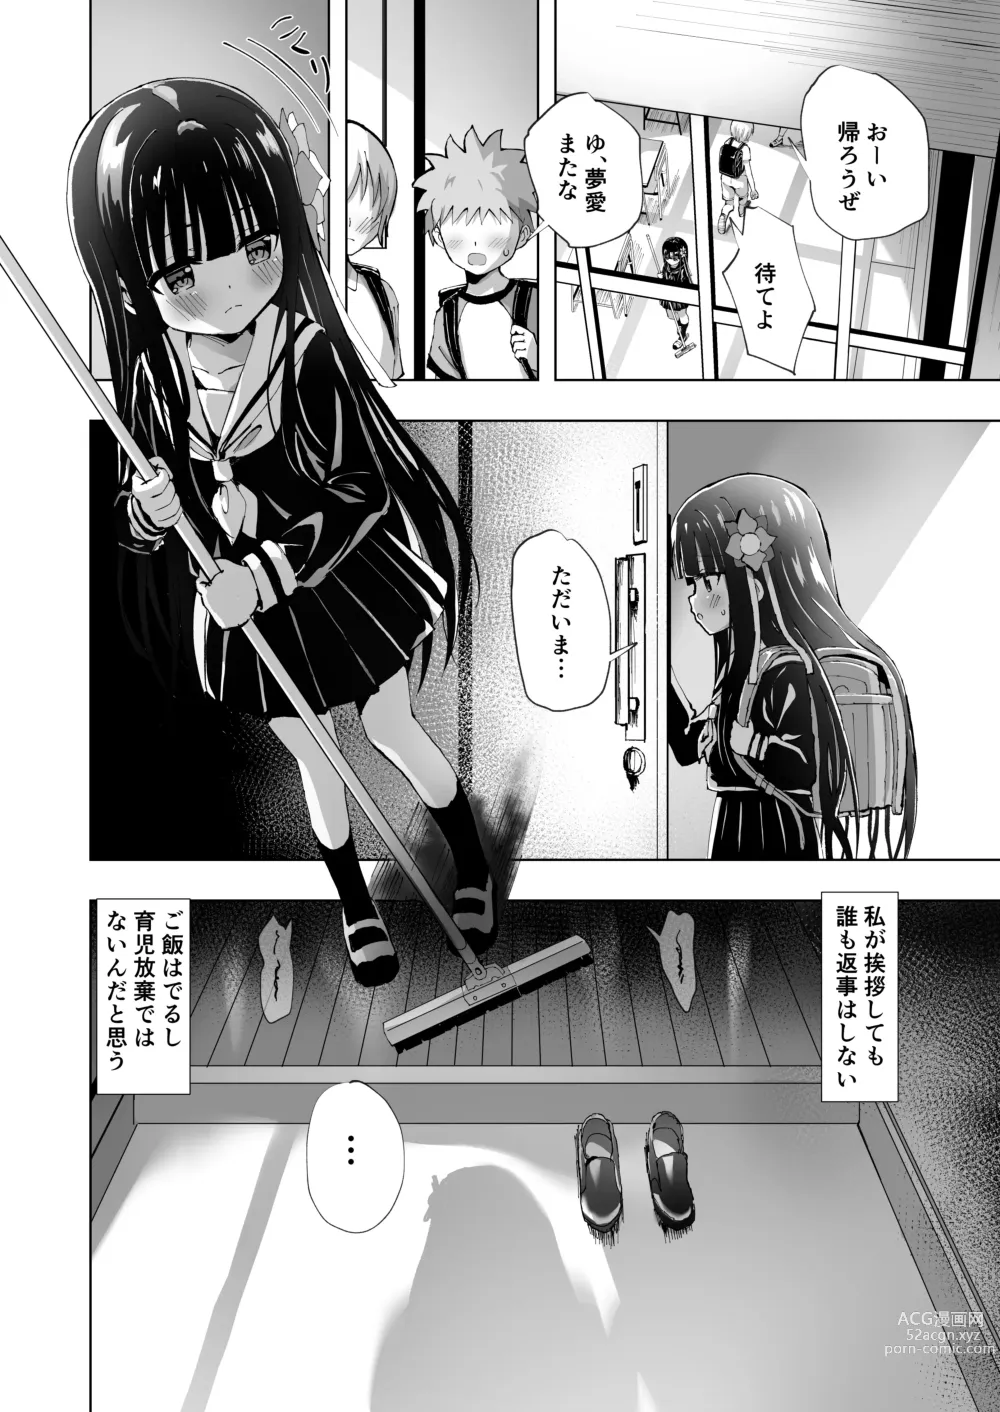 Page 4 of doujinshi Yua Nightmare